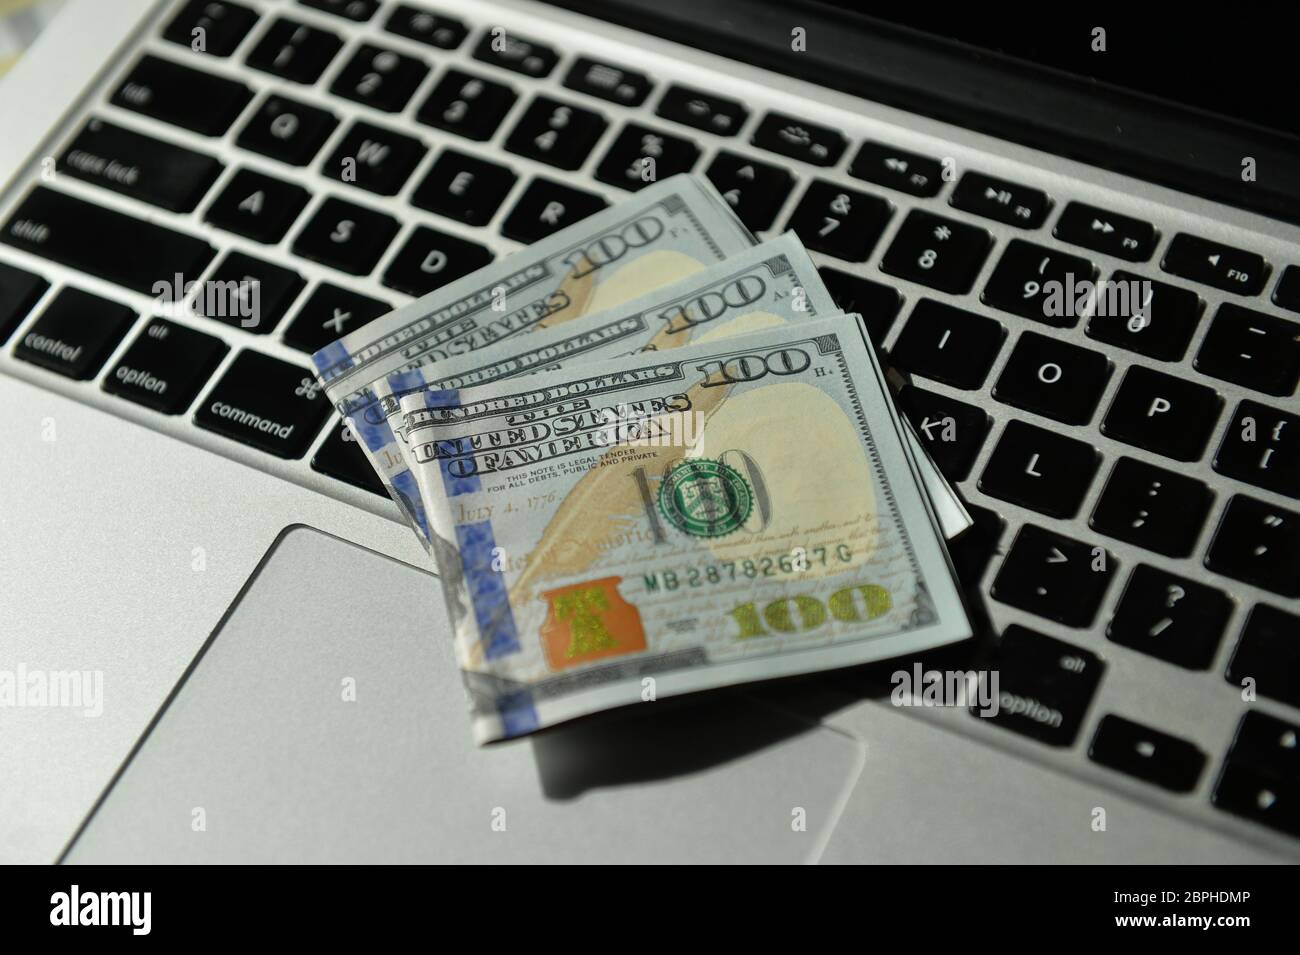 Cedulas de 100 Dollares sobre teclado de notebook Stock Photo